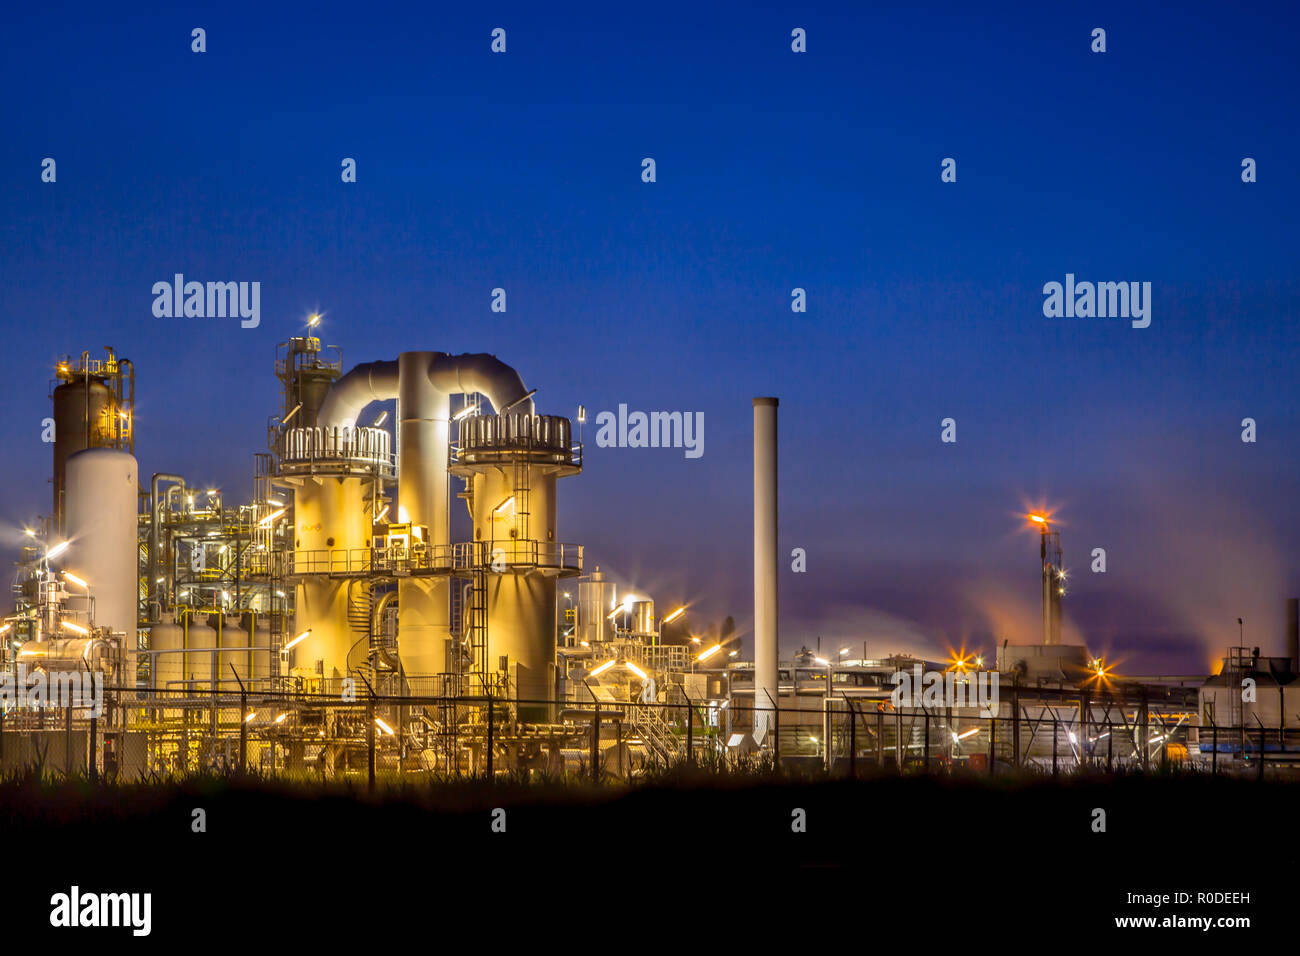 Paysage d'une installation industrielle chimique lourde avec mazework de tuyaux dans le crépuscule de scène de nuit Banque D'Images